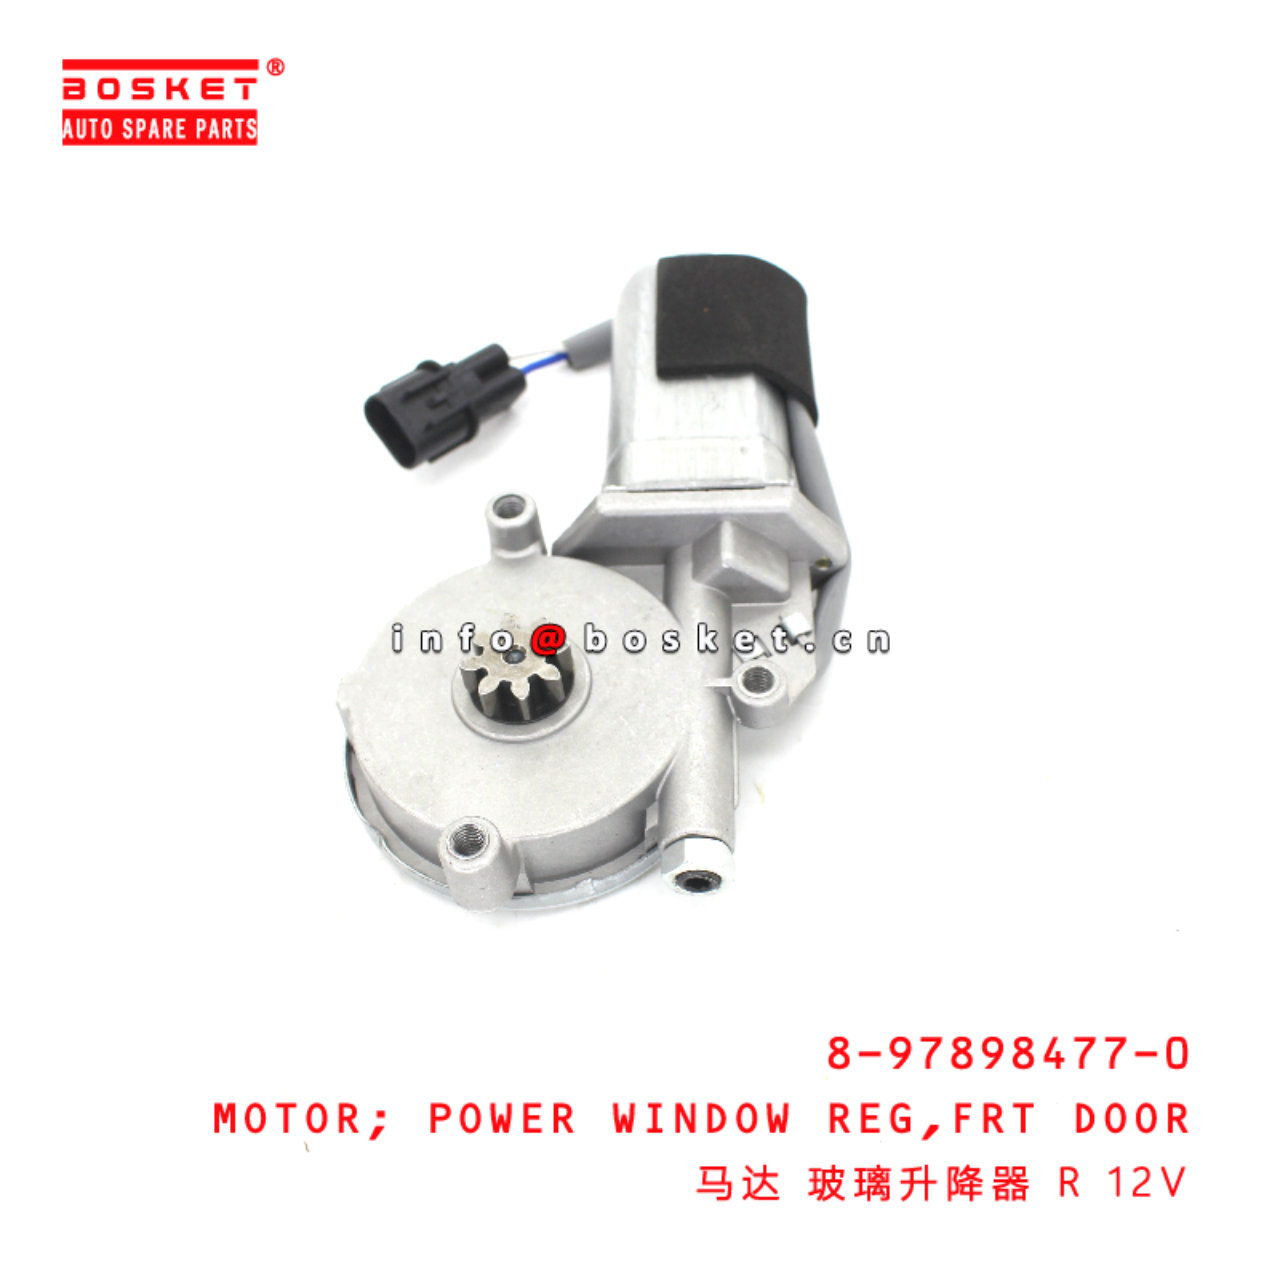 8-97898477-0 Front Door Power Window Regulator Motor suitable for ISUZU NKR77 NKR55 4JH1 4JB1 897898